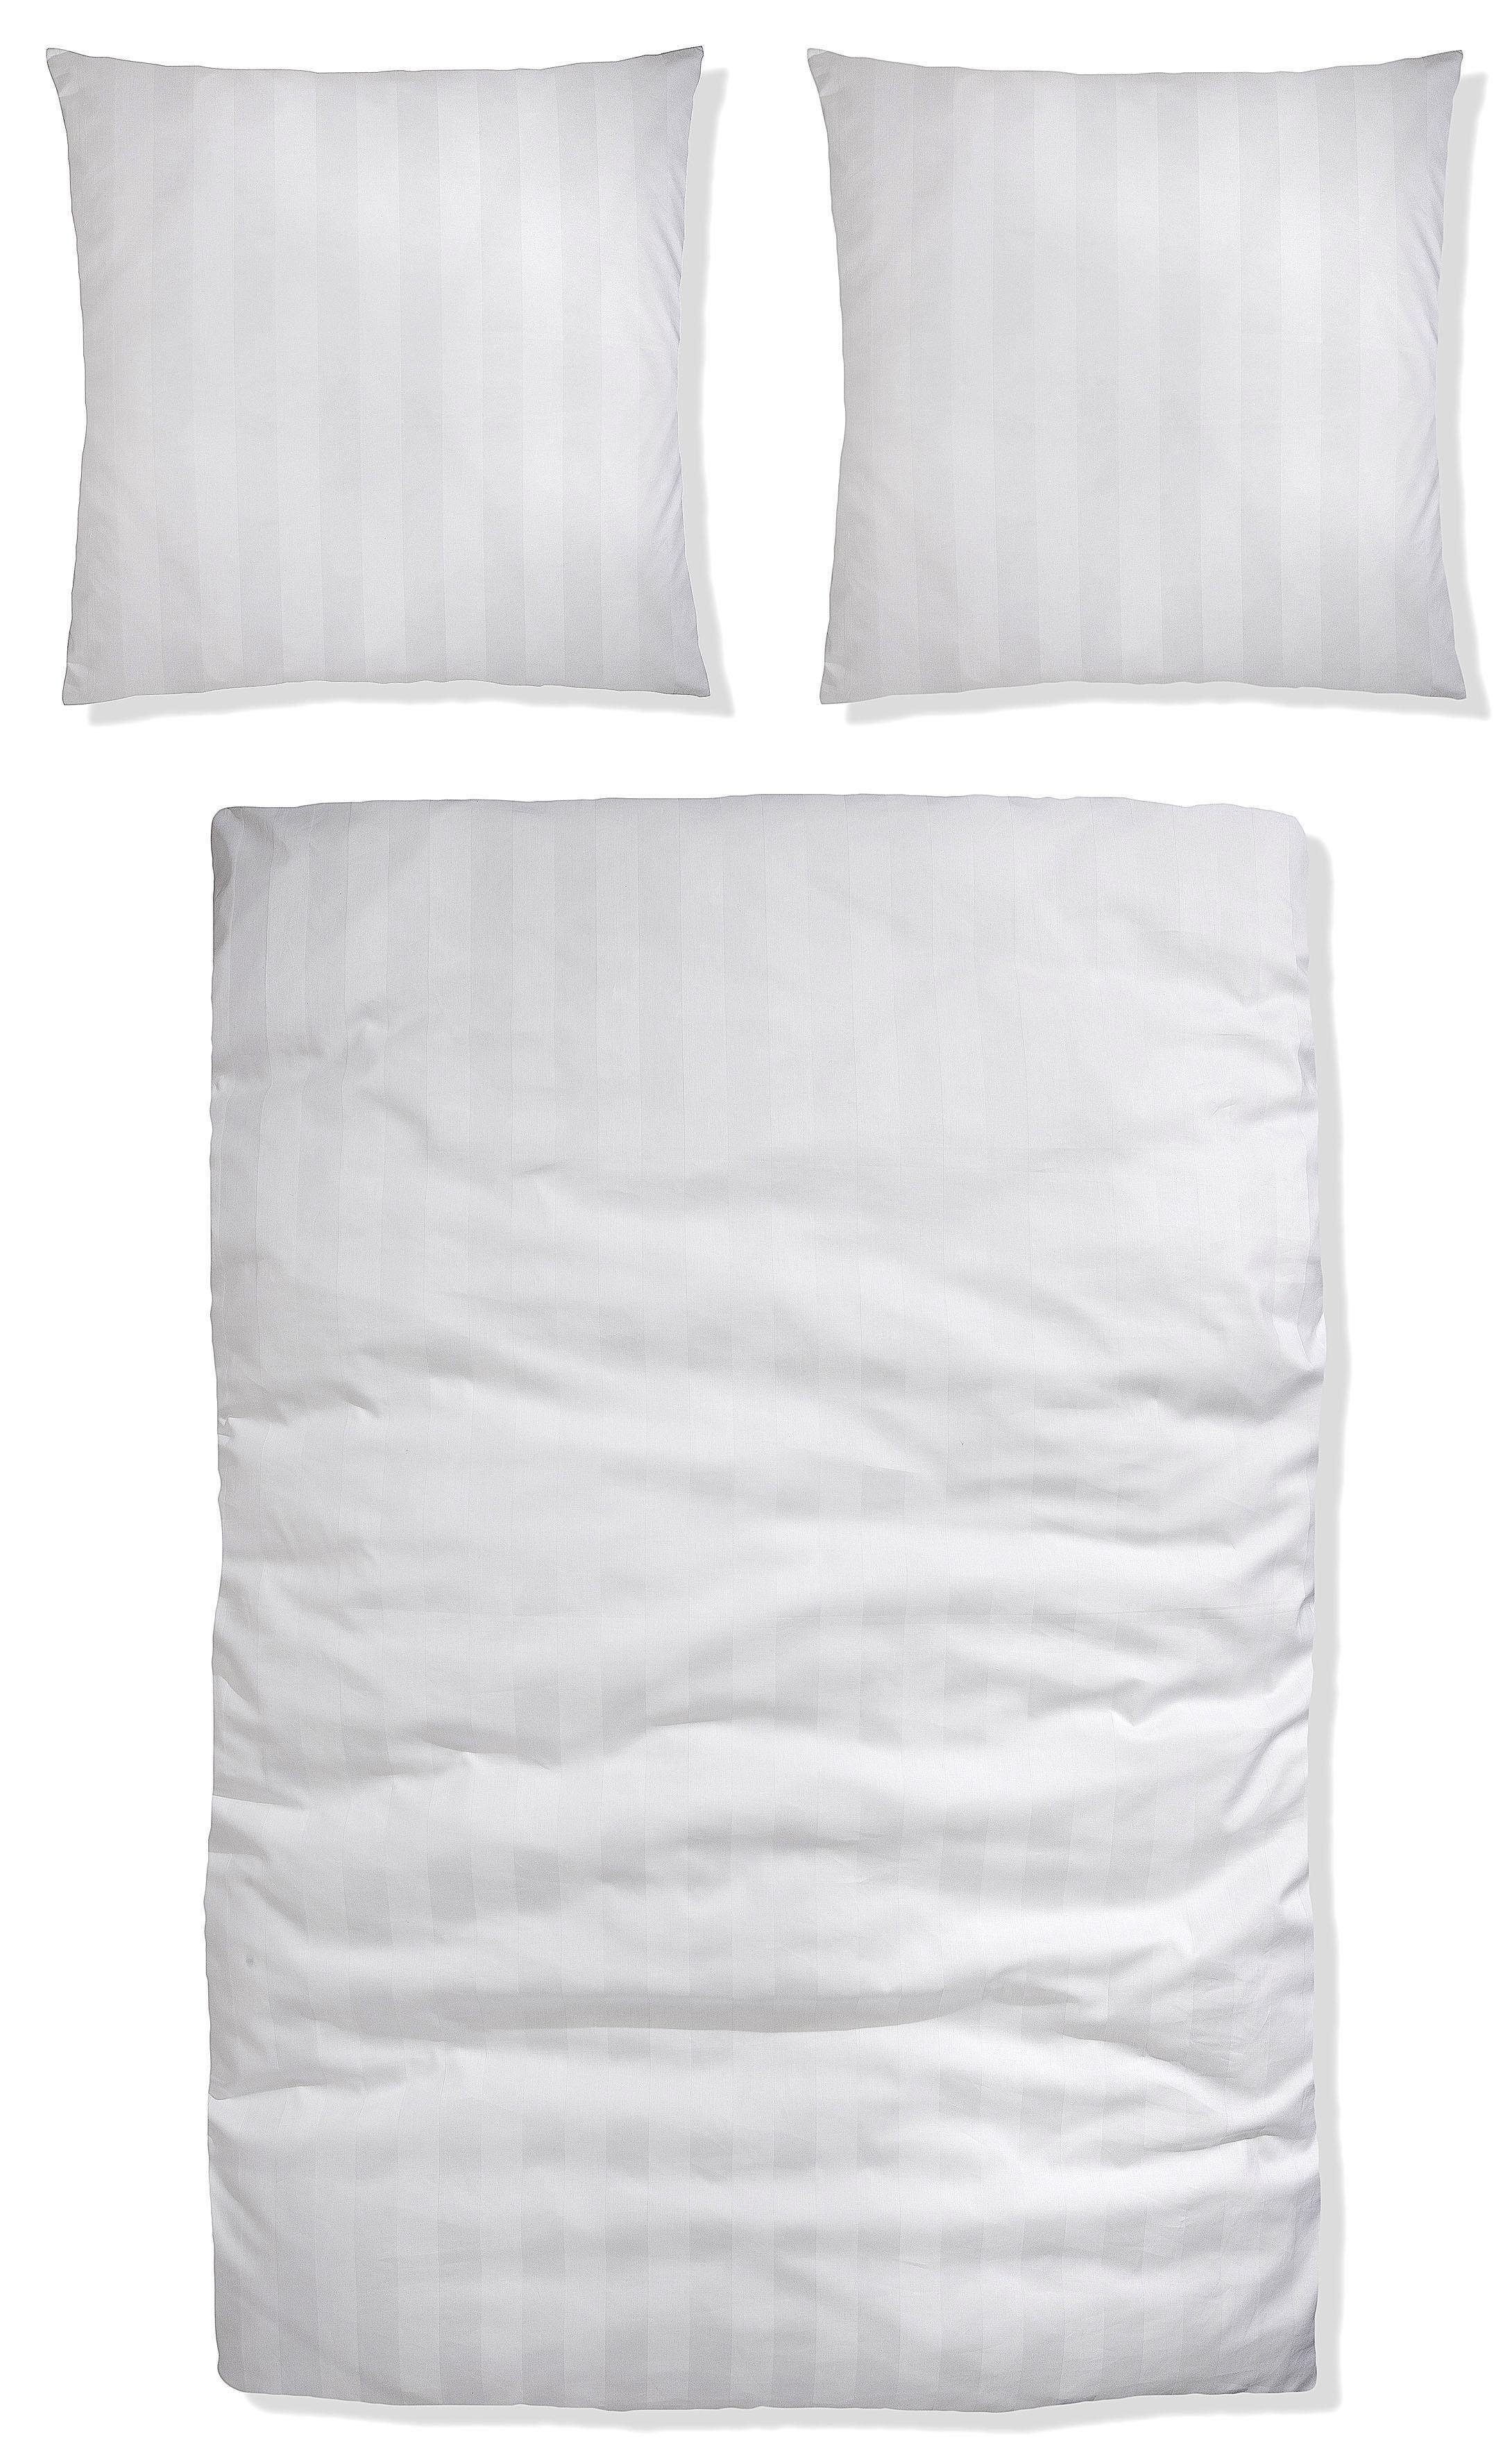 Bettwäsche Malia in Gr. oder 155x220 cm, Satin, aus Satin-Qualität Baumwolle, 135x200 teilig, in weiß Bettwäsche Bettwäsche zeitlose 2 Leonique